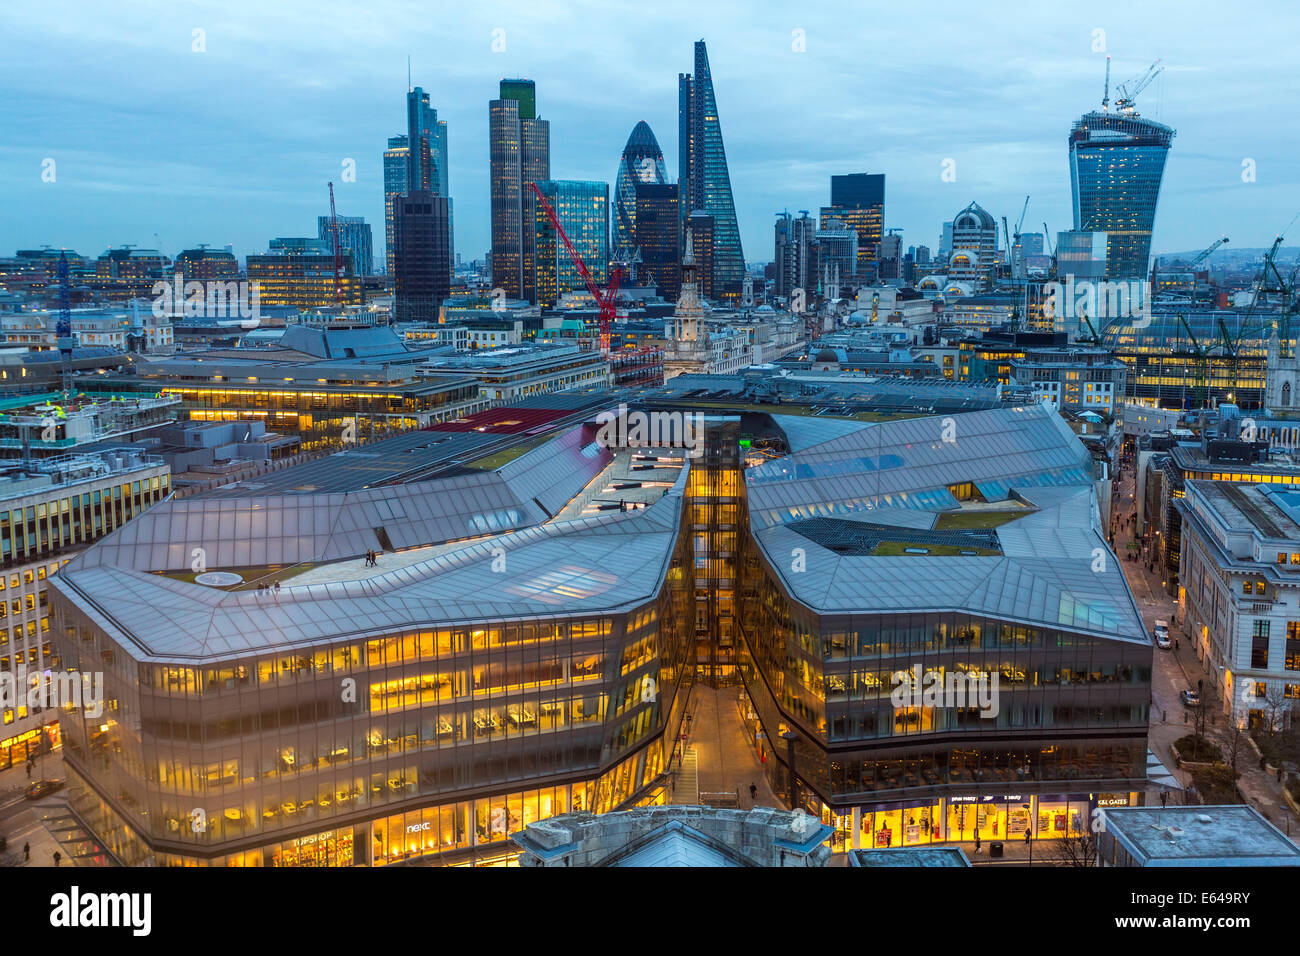 Vue de le Gherkin, talkie walkie building et du quartier financier, London, UK Banque D'Images